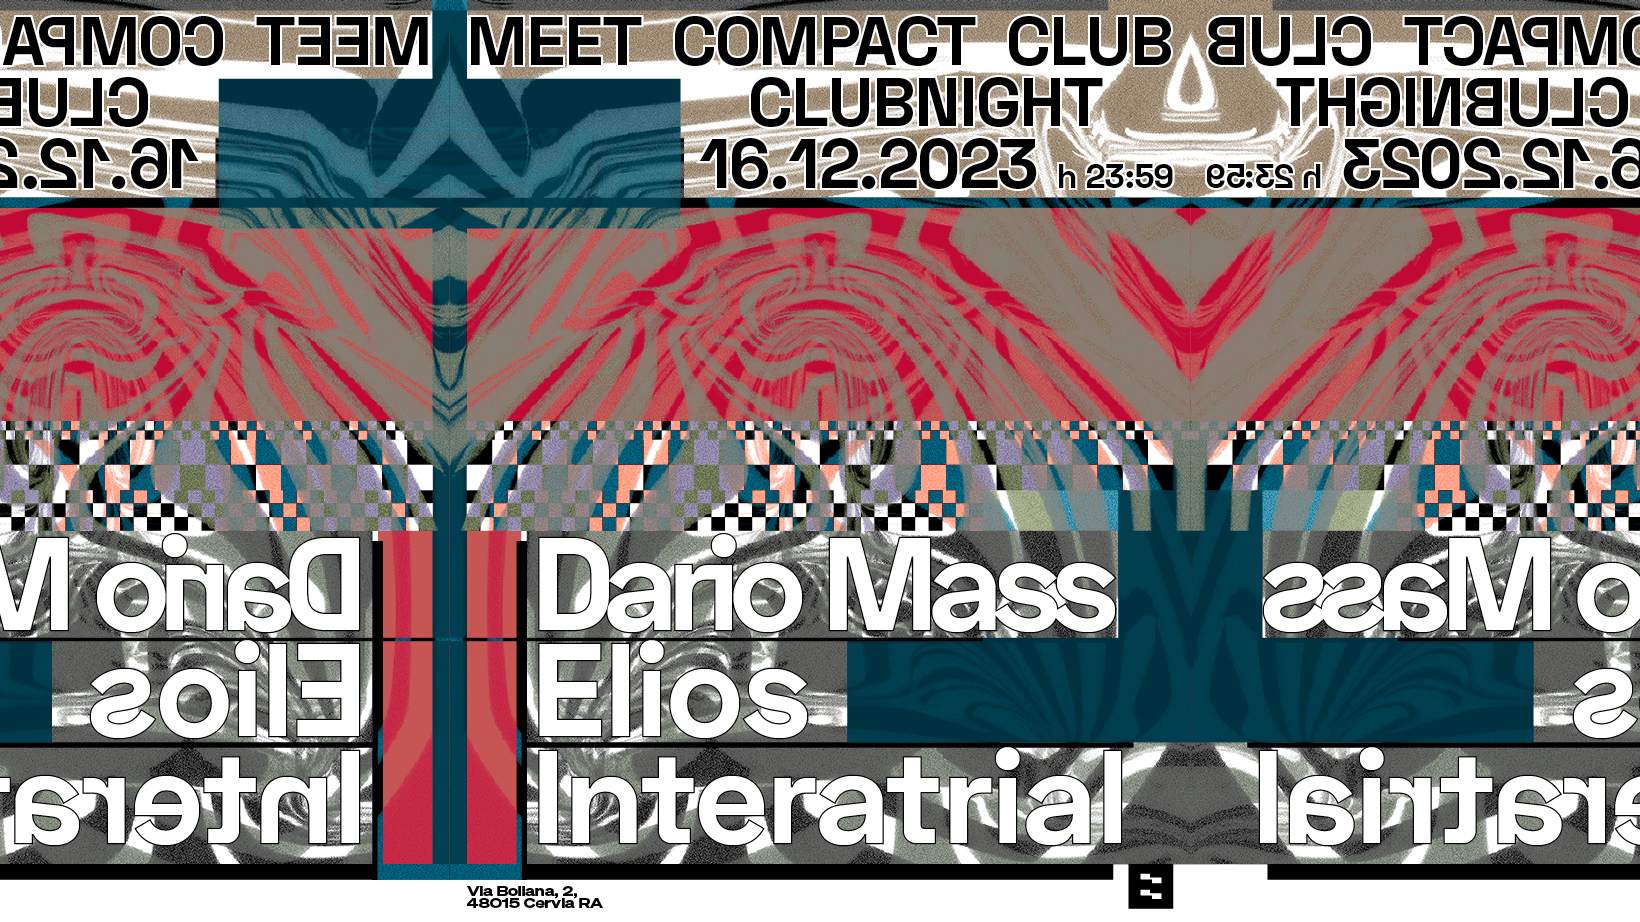 Meet Compact Club with Dario Mass, Elios & Interatrial - フライヤー表